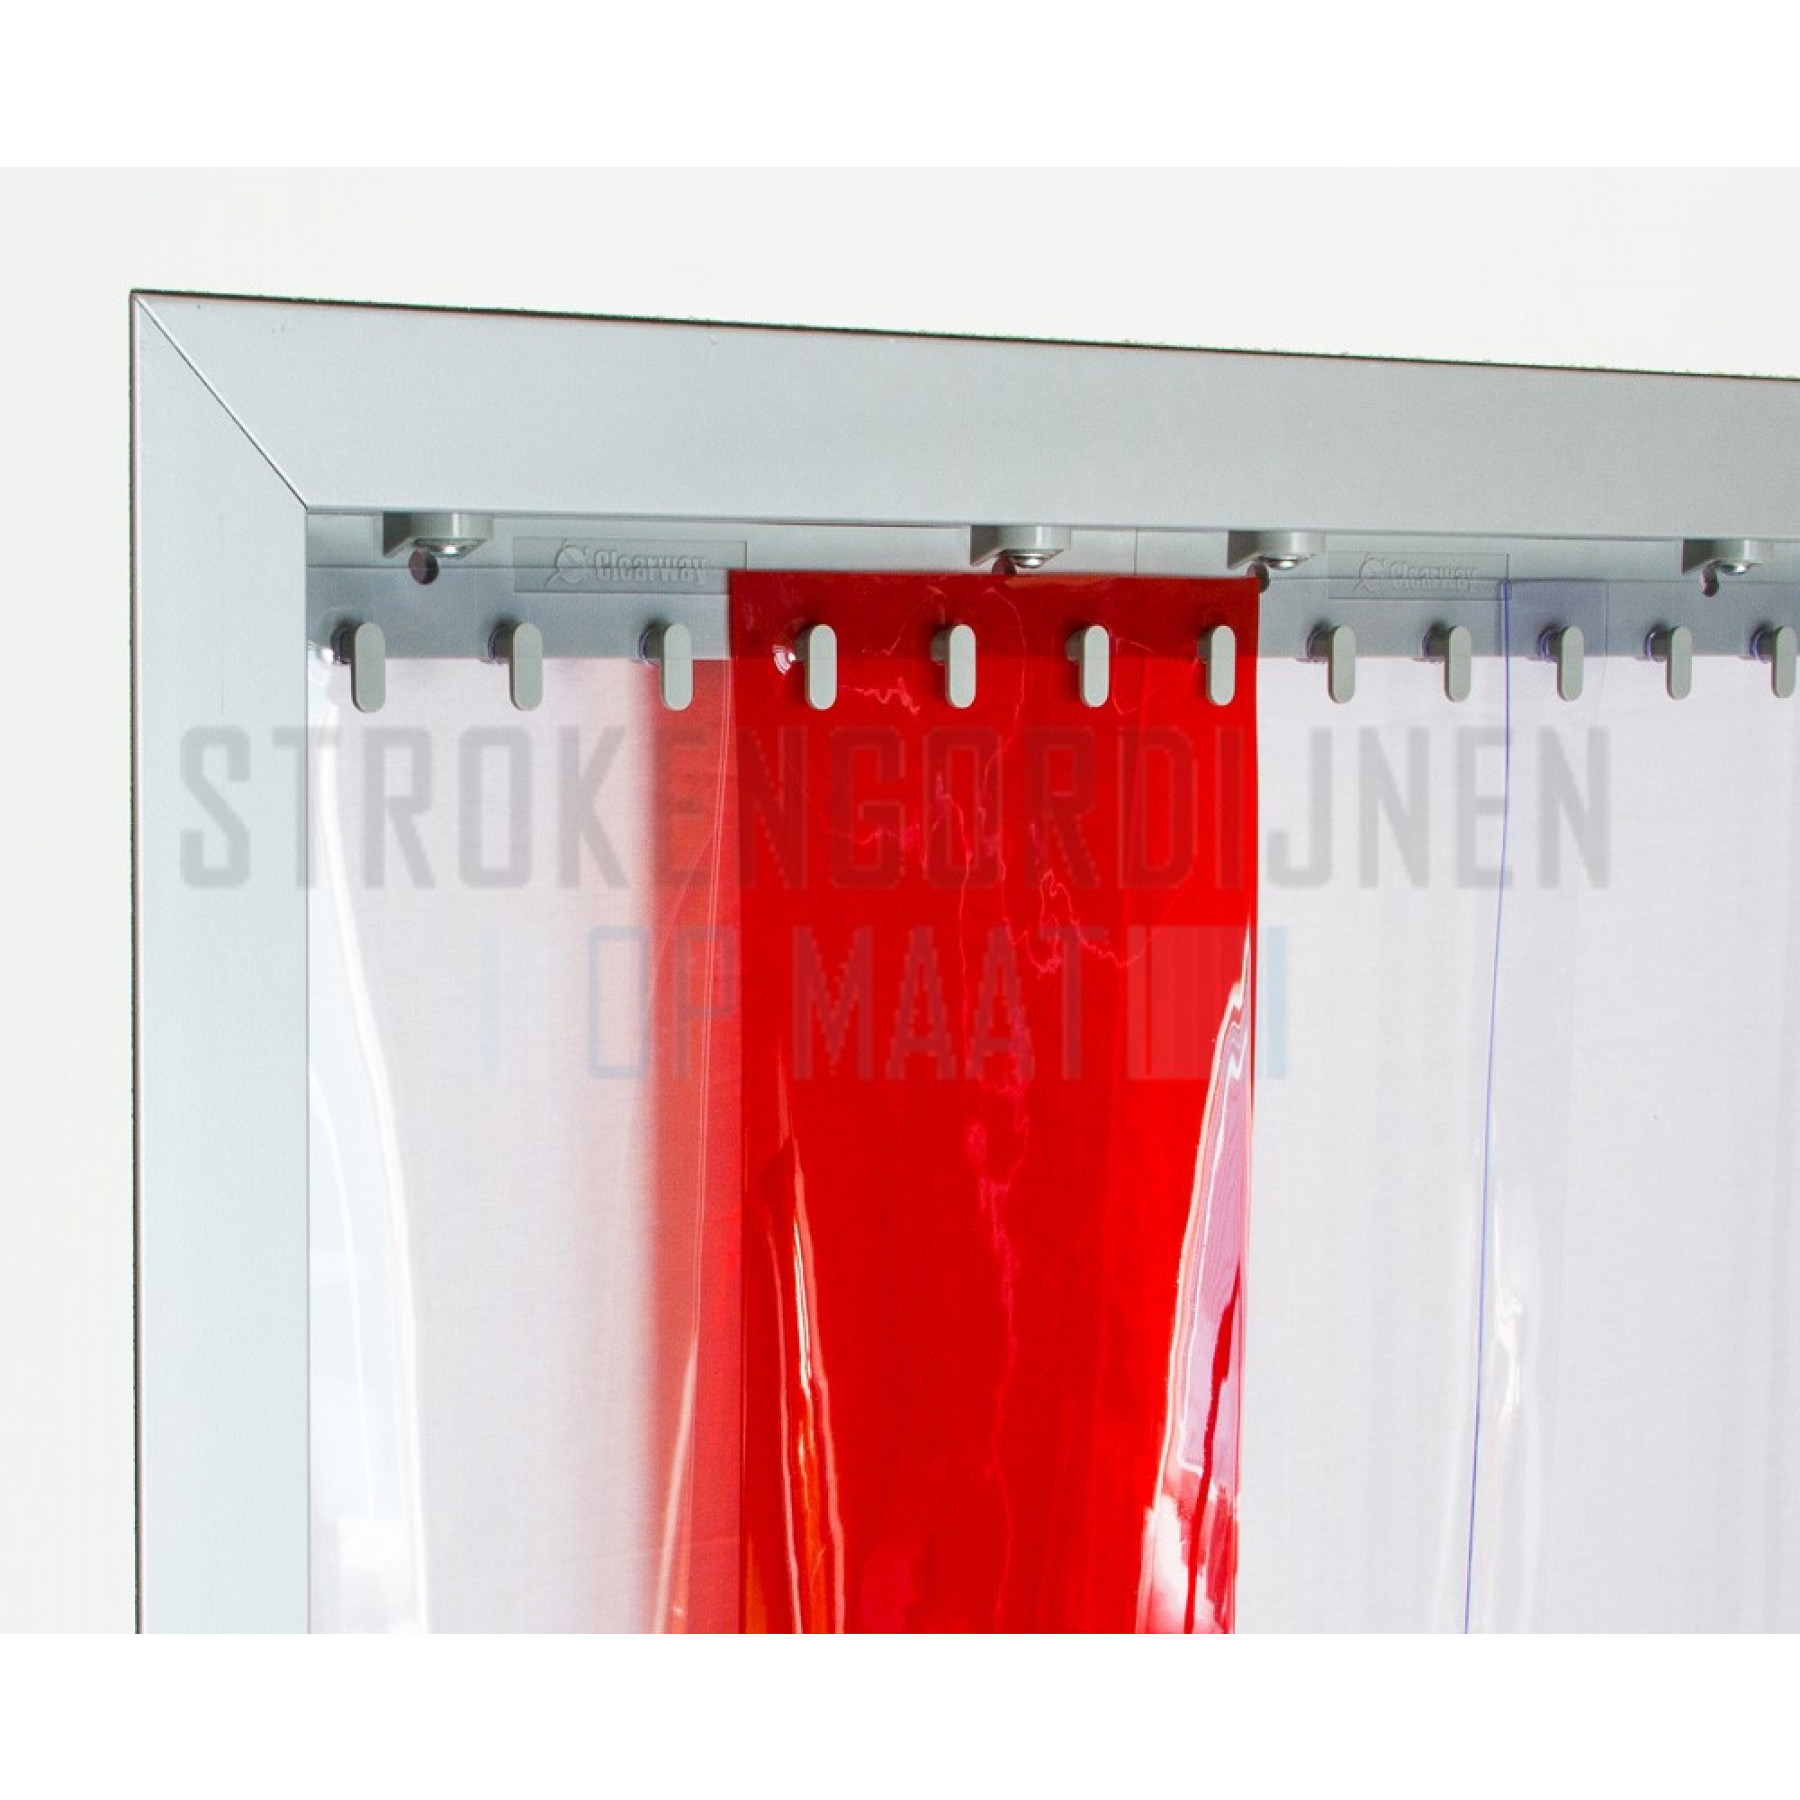 PVC Streifen zur Renovierung, 200mm breit, 2mm dick, Farbe Rot, transparent